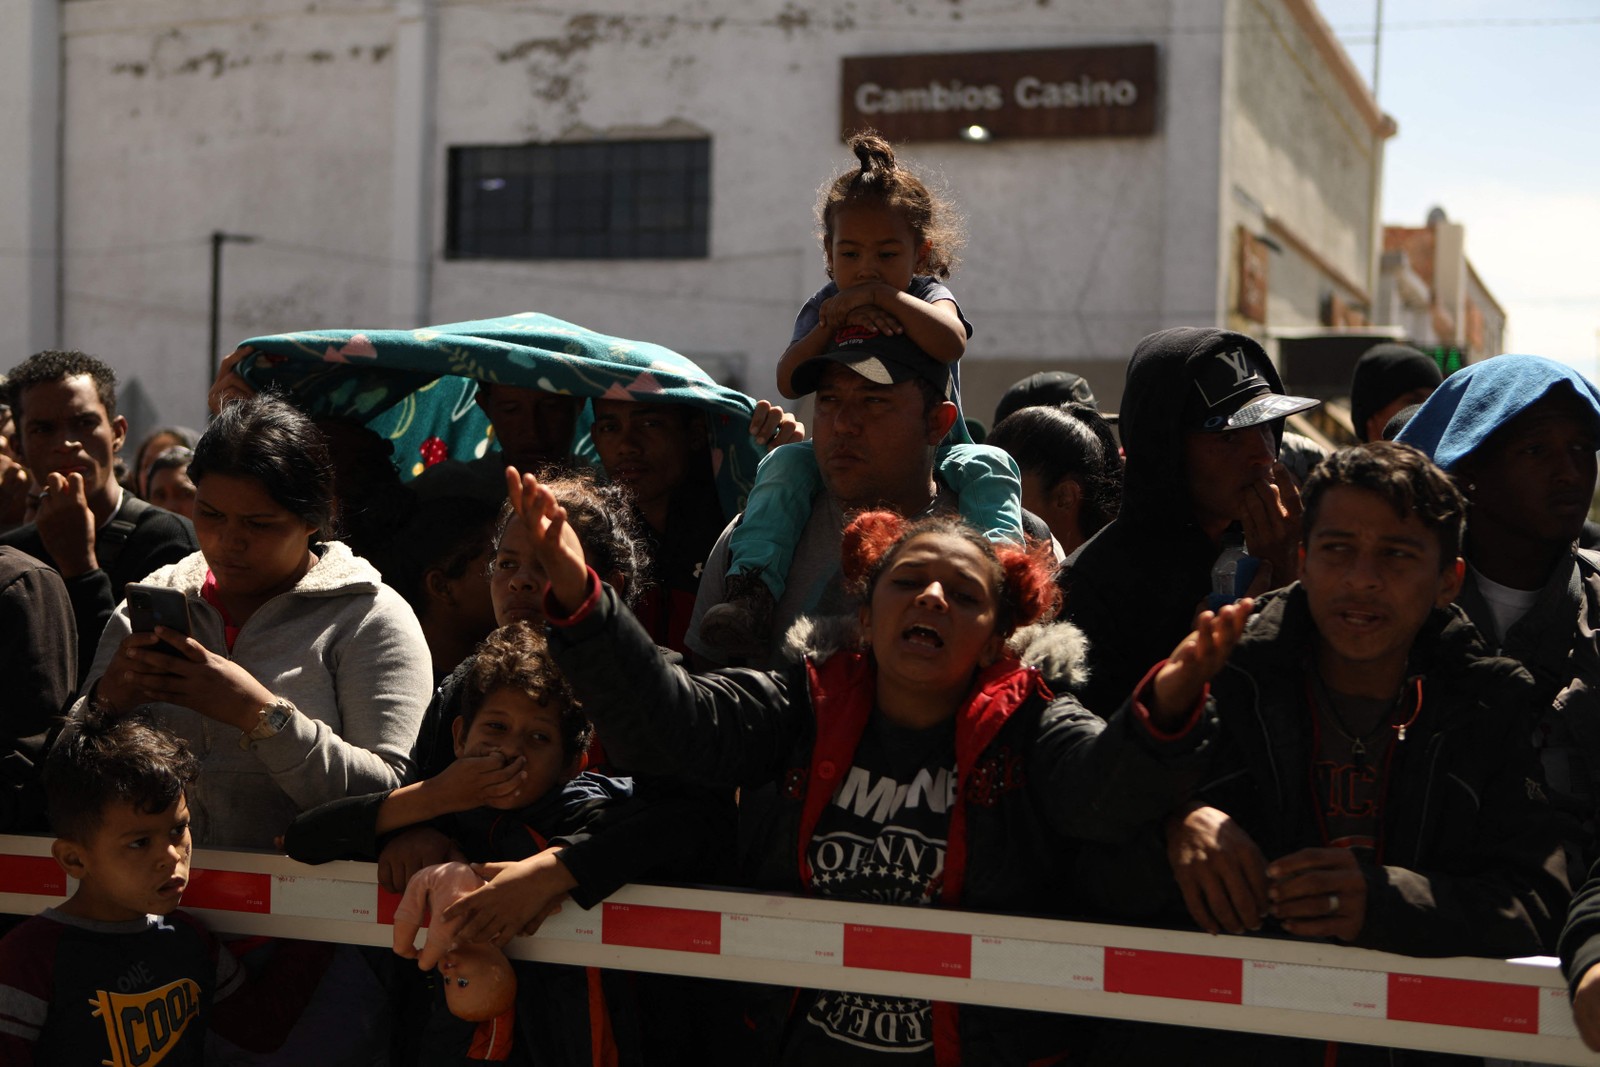 Os guardas de fronteira dos EUA se moveram para fechar a ponte, disse Enrique Valenzuela, um trabalhador da sociedade civil que ajuda migrantes em Juarez — Foto: Herika Martinez / AFP